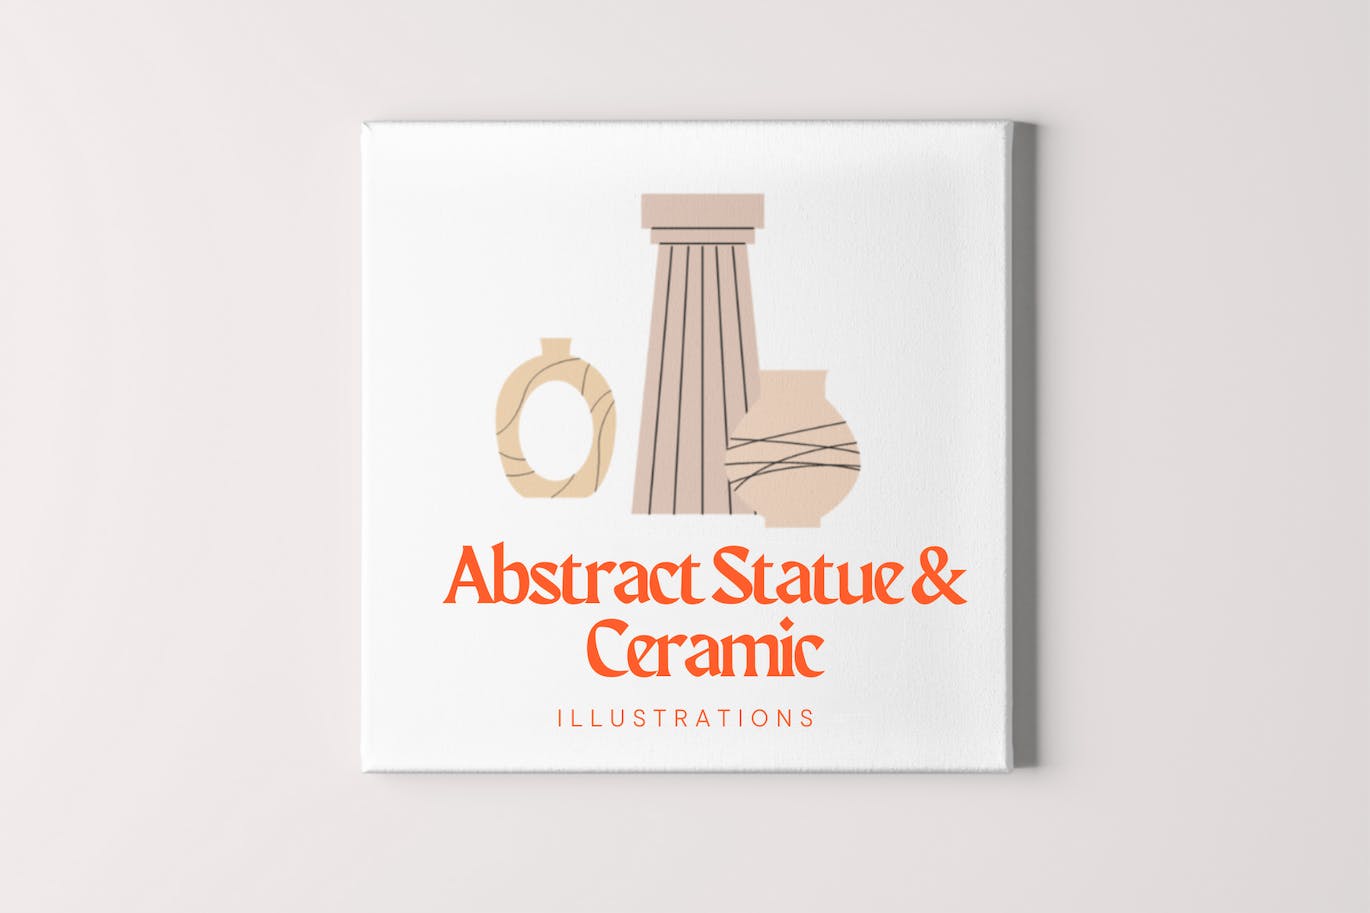 抽象雕像和陶瓷插画 Abstract Statue & Ceramic Illustrations-9